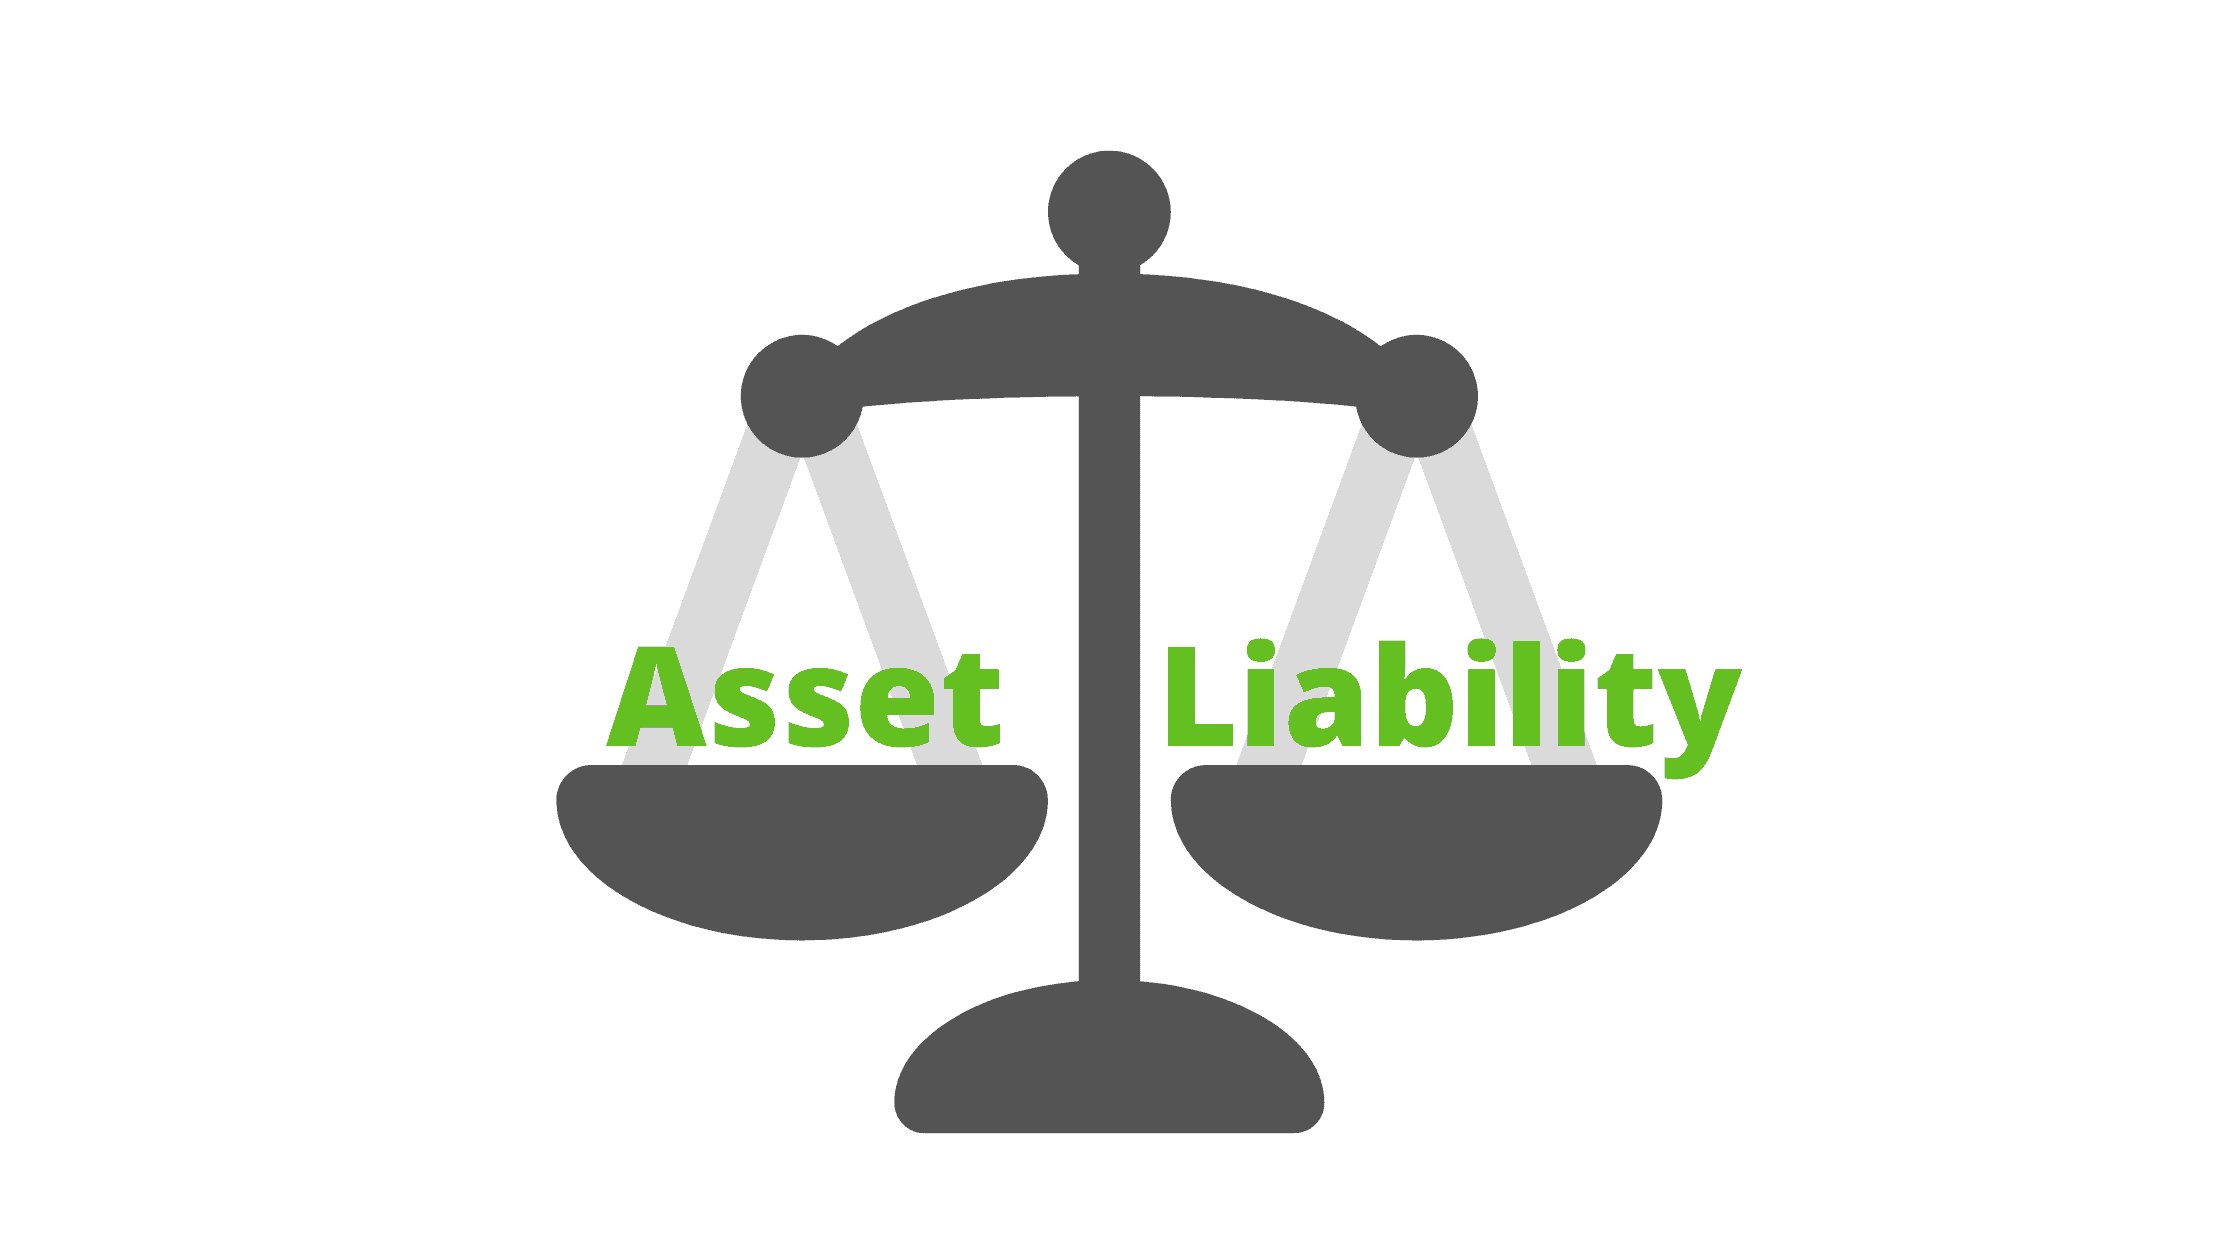 Een balans tussen assets en liabilities